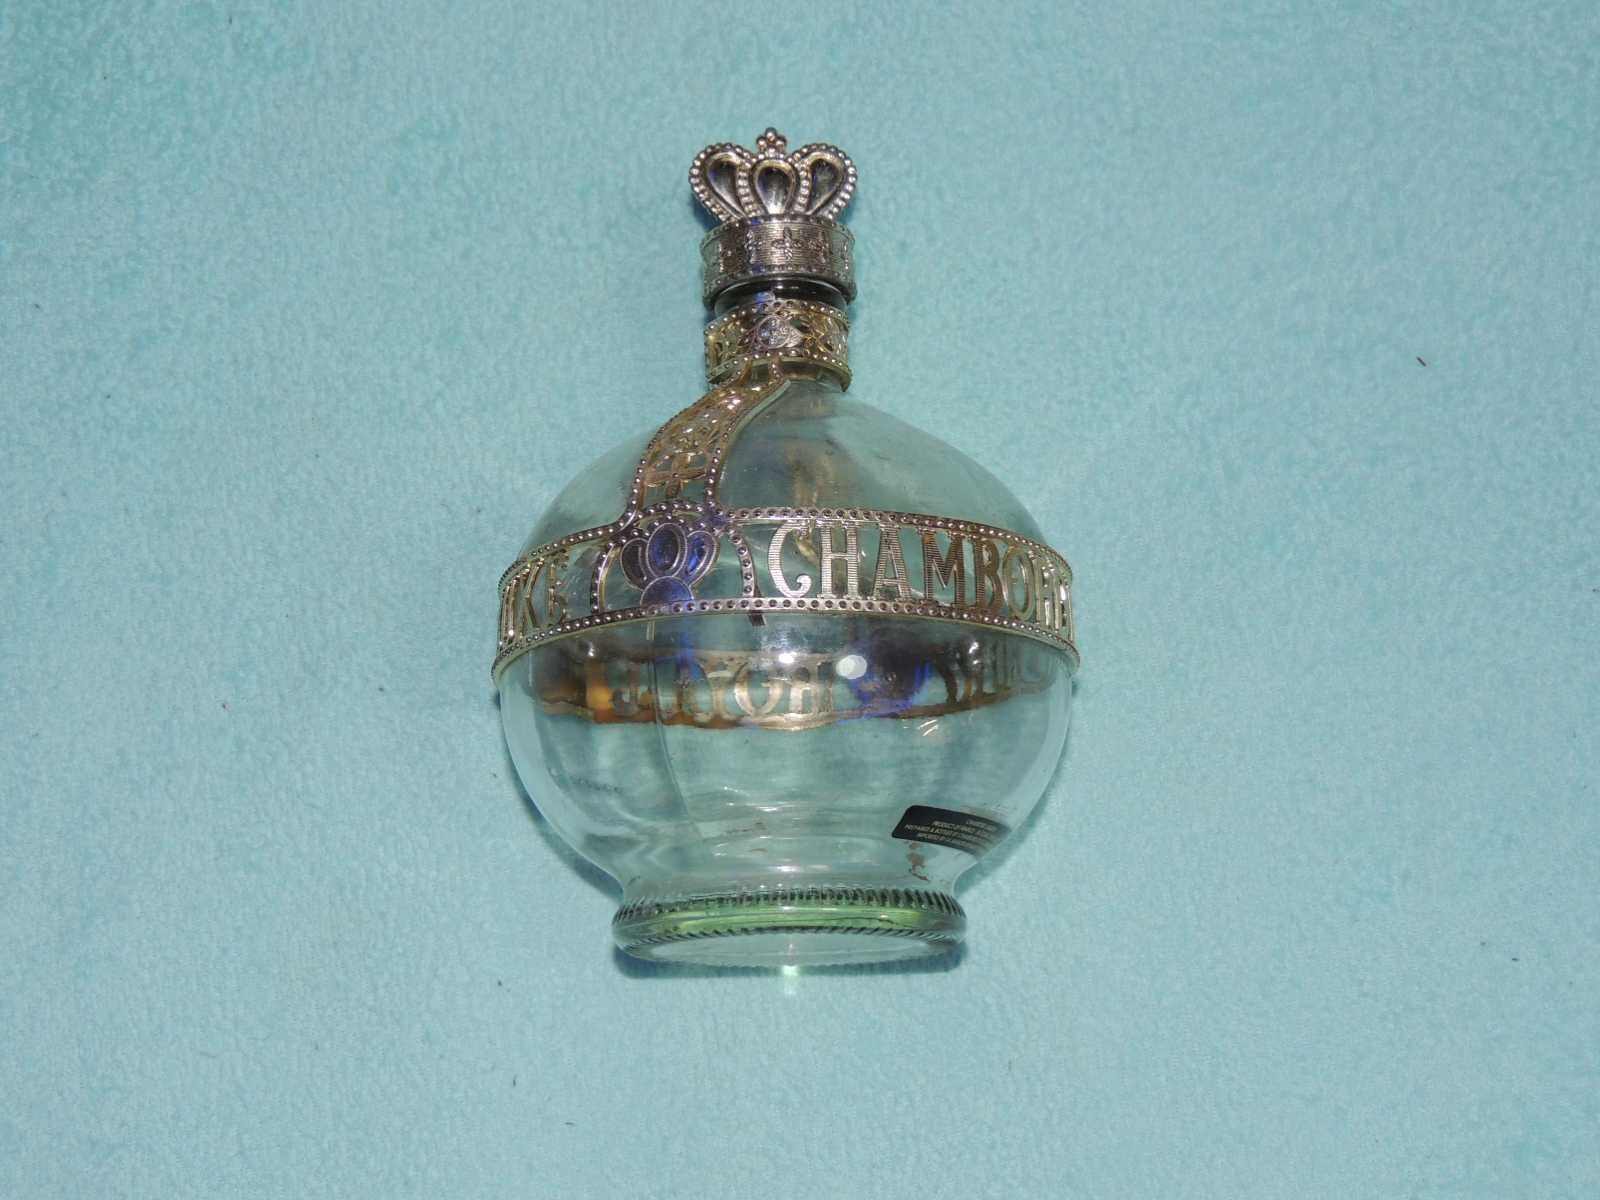 Vintage Royale Deluxe Chambord Liqueur Bottle